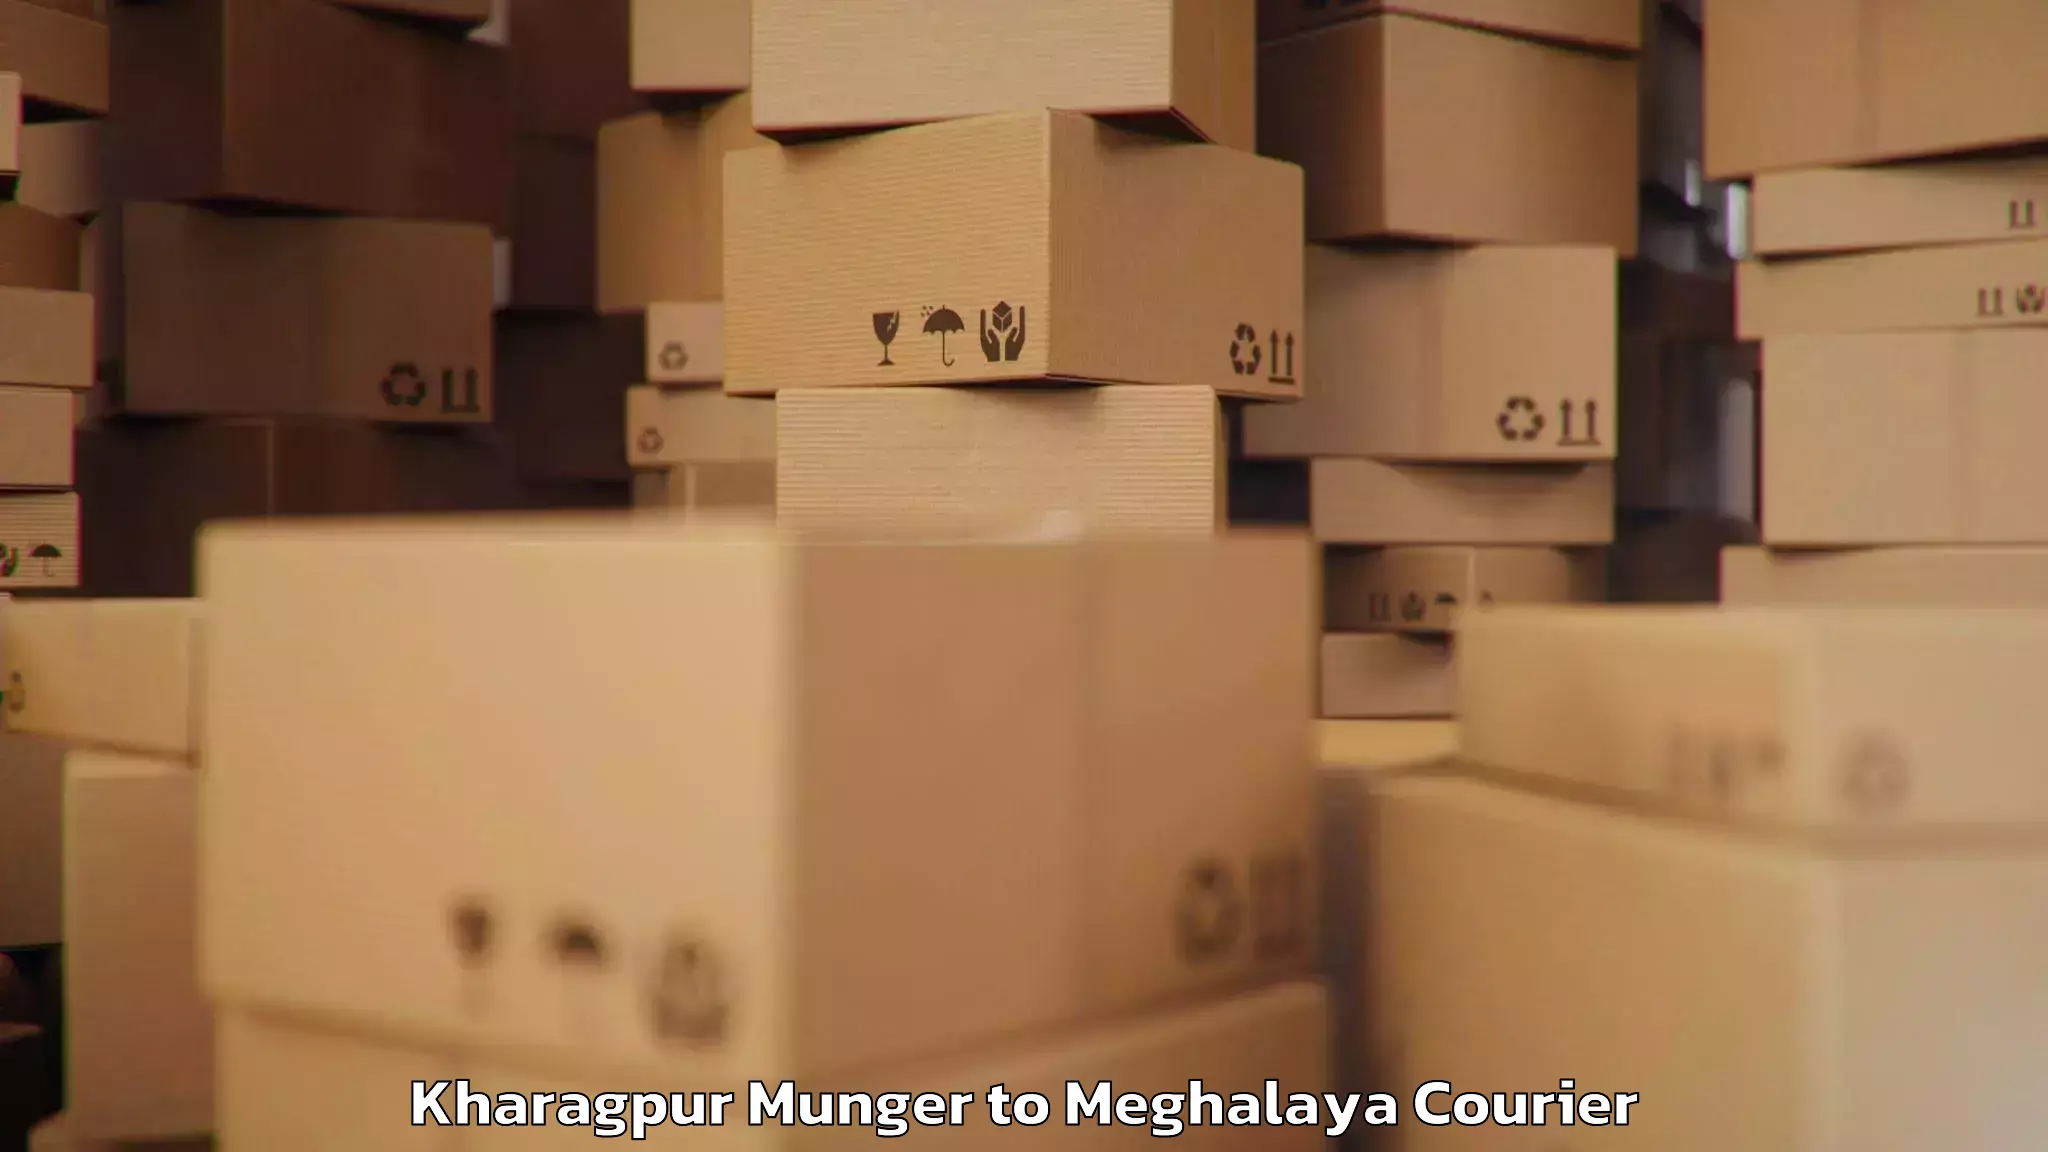 Baggage transport network Kharagpur Munger to Meghalaya